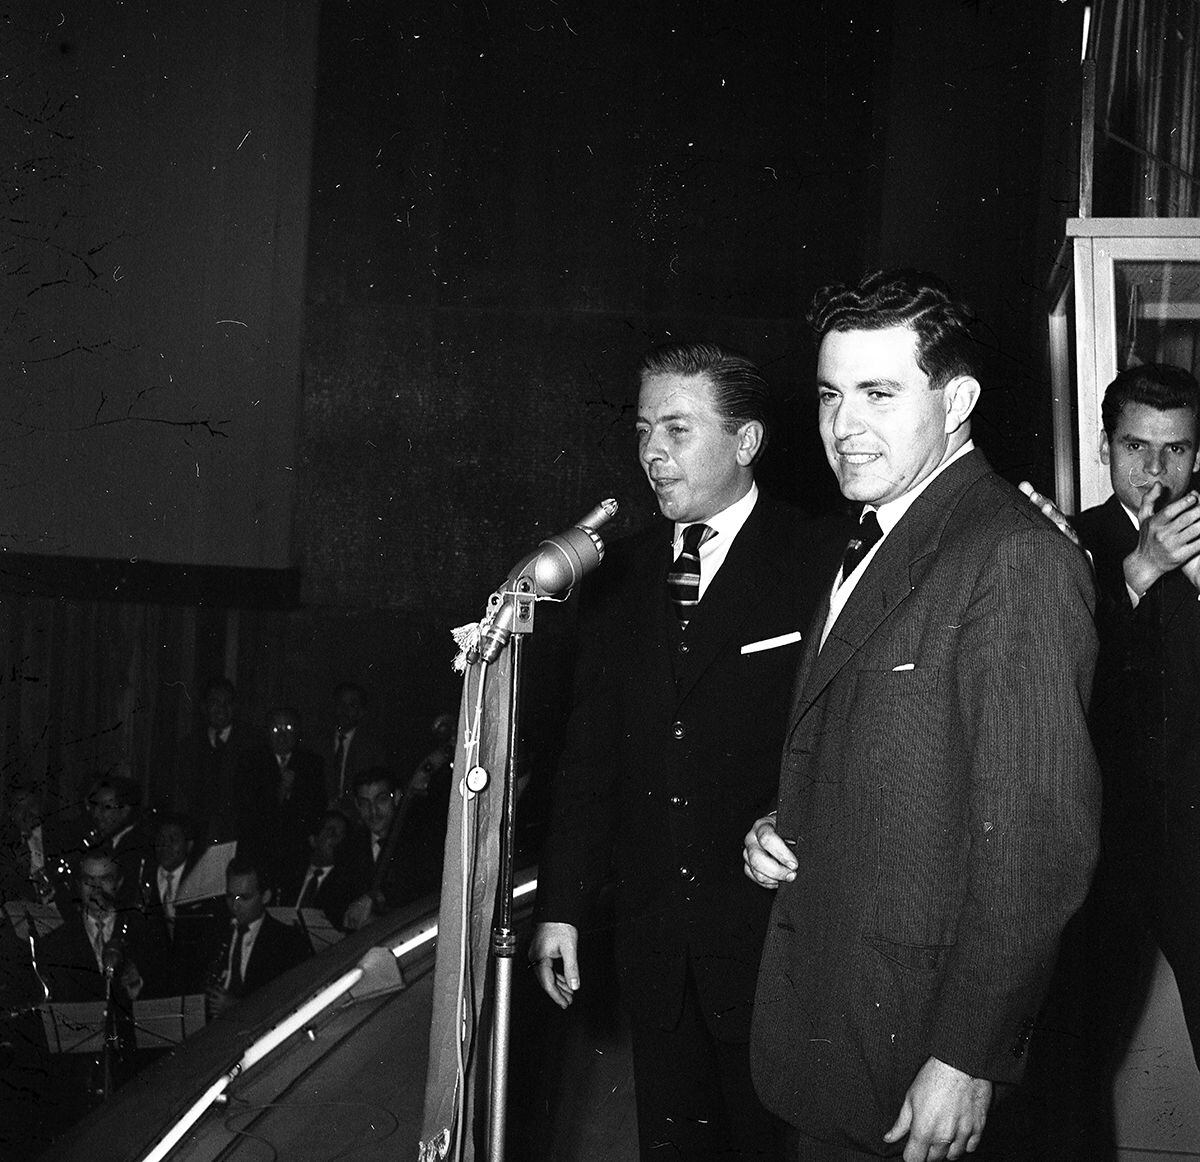 Lima, 28 de setiembre de 1956. El ingeniero Tomás Unger participa en el programa concurso "Helen Curtis pregunta", conducido por Pablo de Madalengoitia. (Foto: GEC Archivo Histórico)